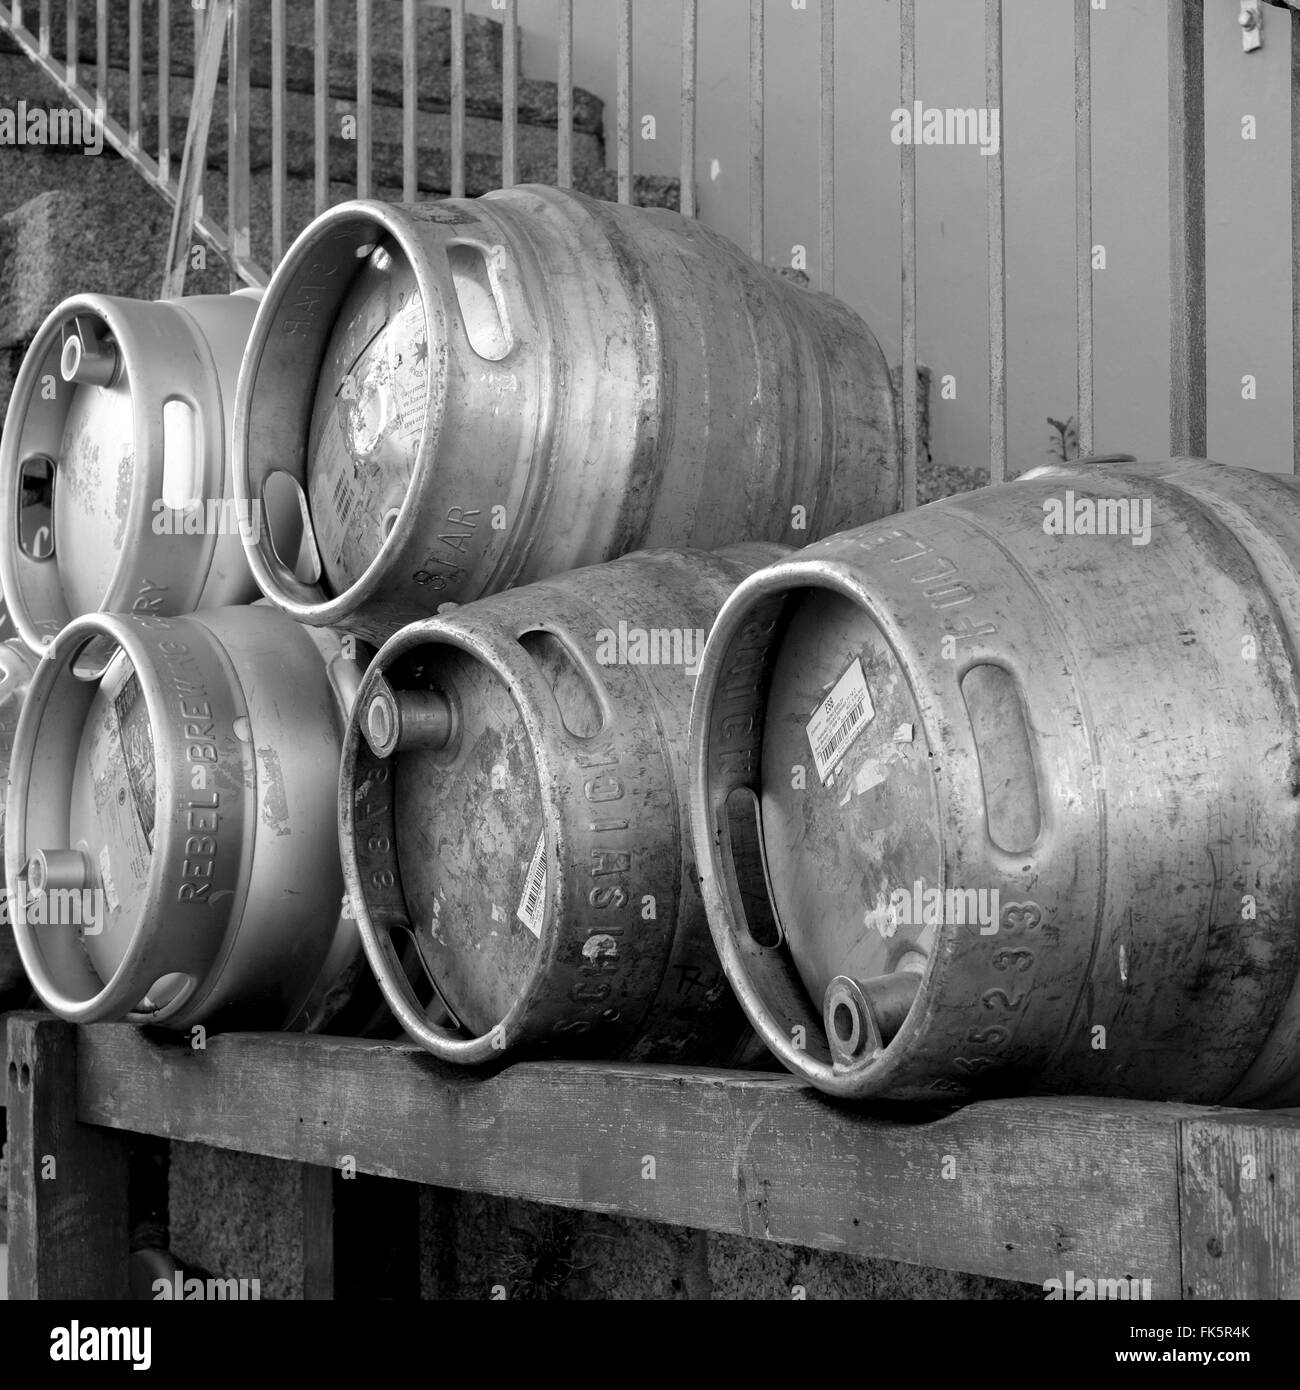 In acciaio inox barili di birra Foto Stock